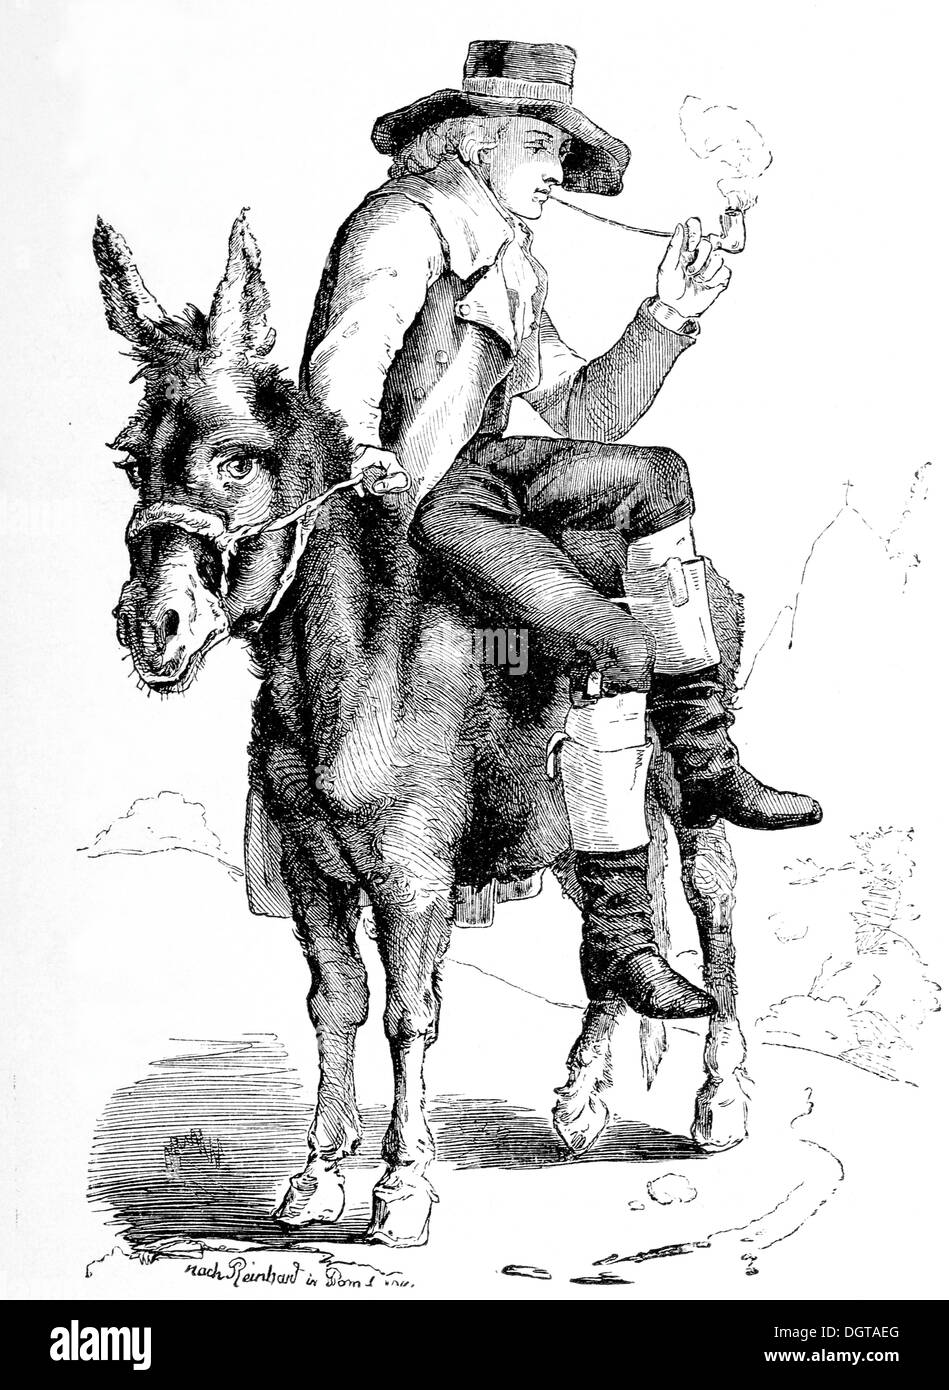 Schiller in Carlsbad 1791, historical illustration in Deutsche Literaturgeschichte or German literature from 1885 Stock Photo